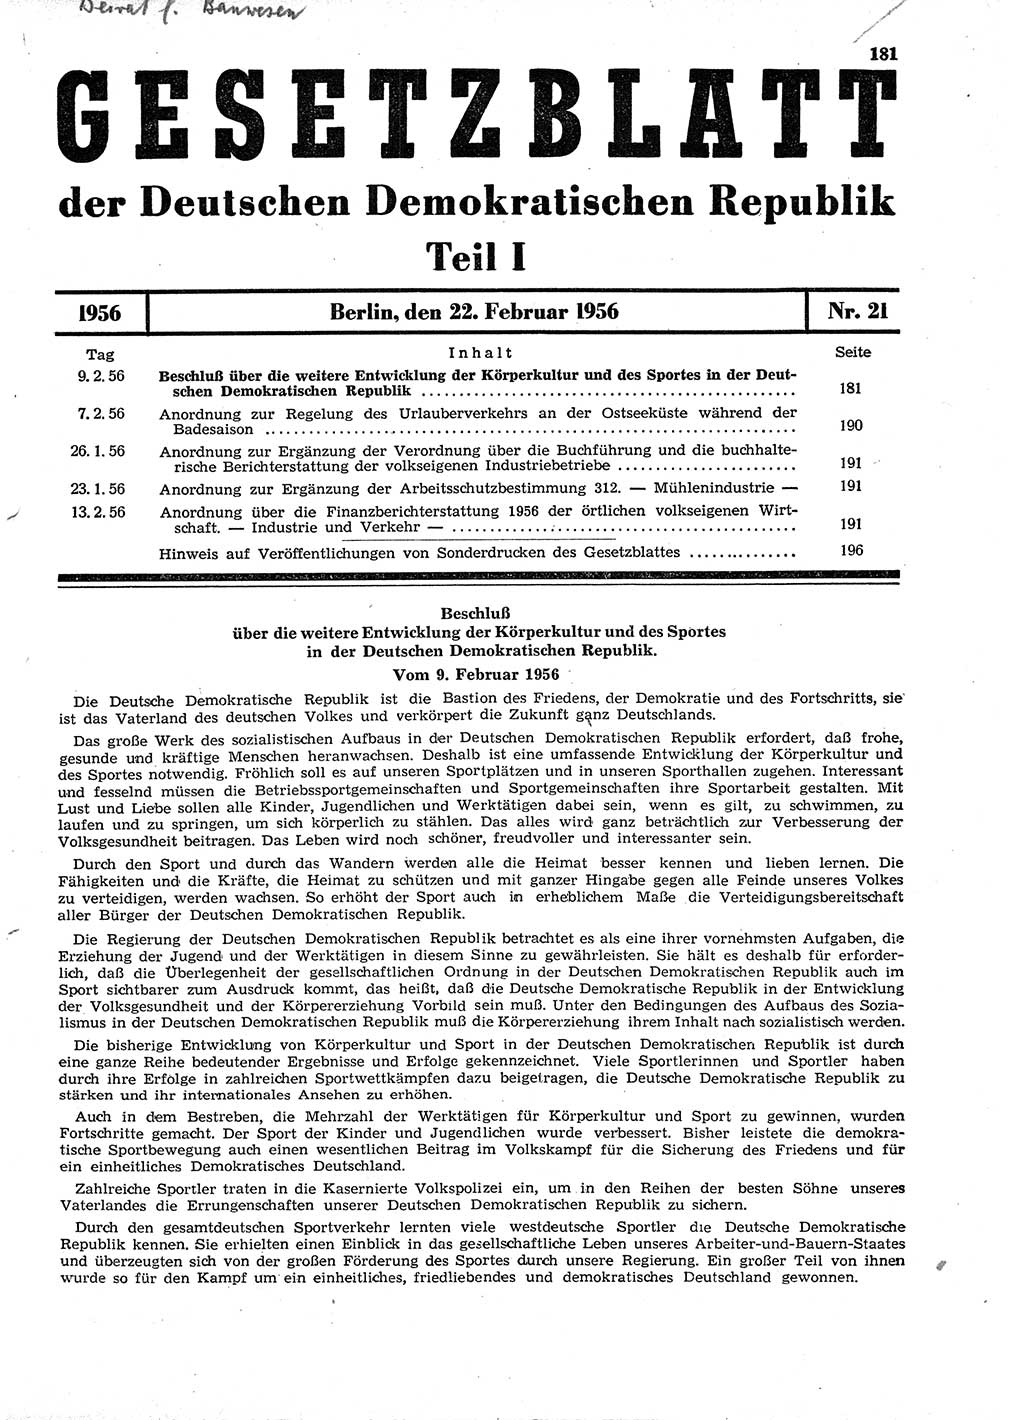 Gesetzblatt (GBl.) der Deutschen Demokratischen Republik (DDR) Teil Ⅰ 1956, Seite 181 (GBl. DDR Ⅰ 1956, S. 181)